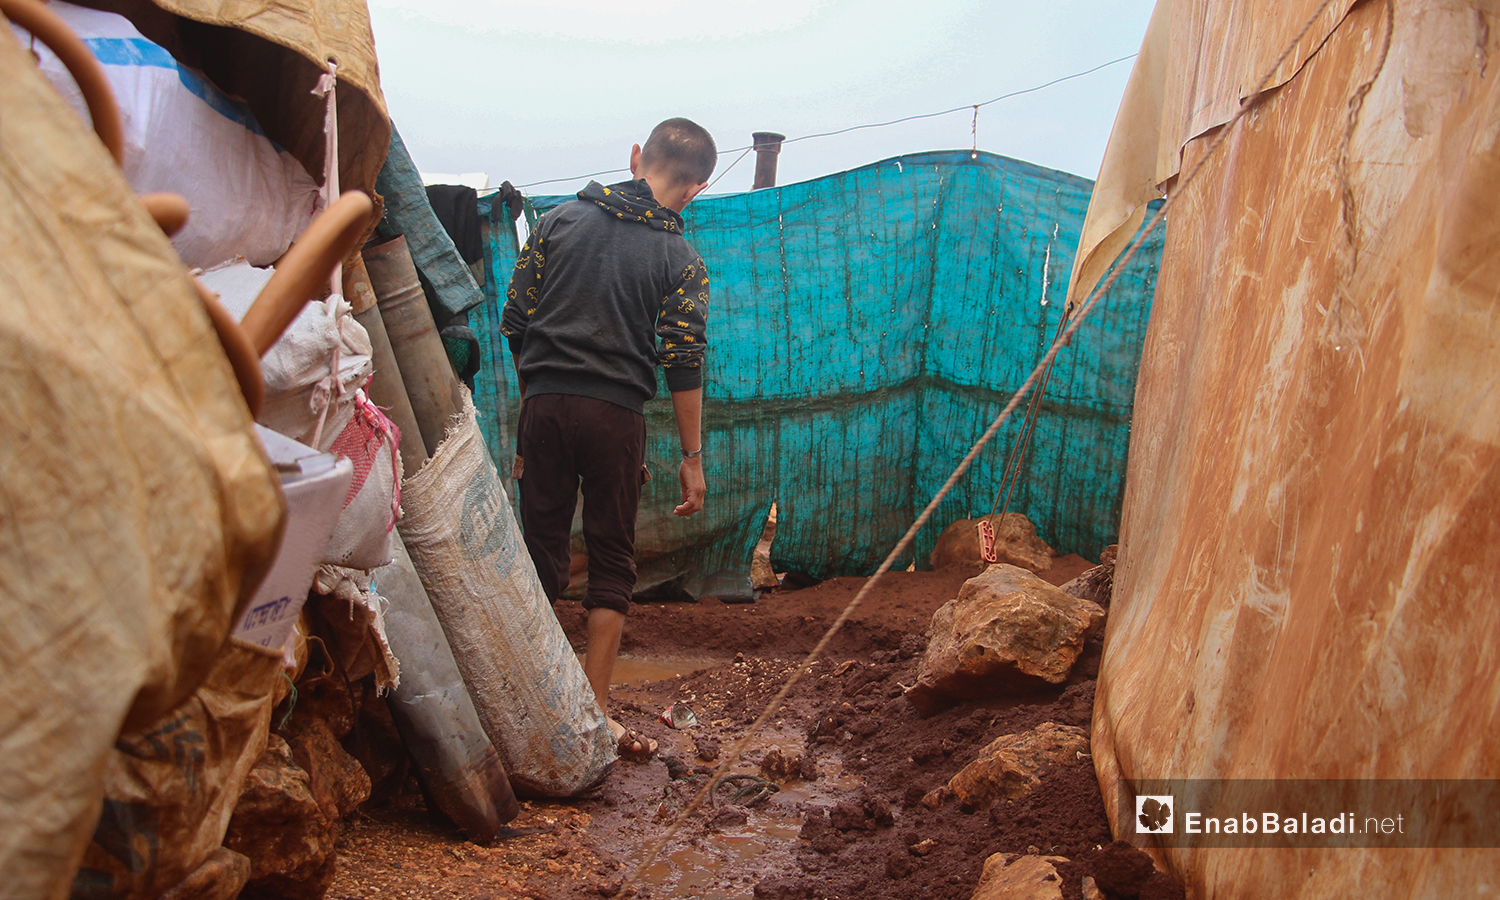 تحولت المساحات الفارغة ما بين الخيام إلى مستنقعات من الطين بعد هطول الأمطار الغزيرة على مخيم الرمضون على أطراف قرية كفر عروق شمالي إدلب - 2 تشرين الثاني 2020 (عنب بلدي/إياد عبد الجواد)